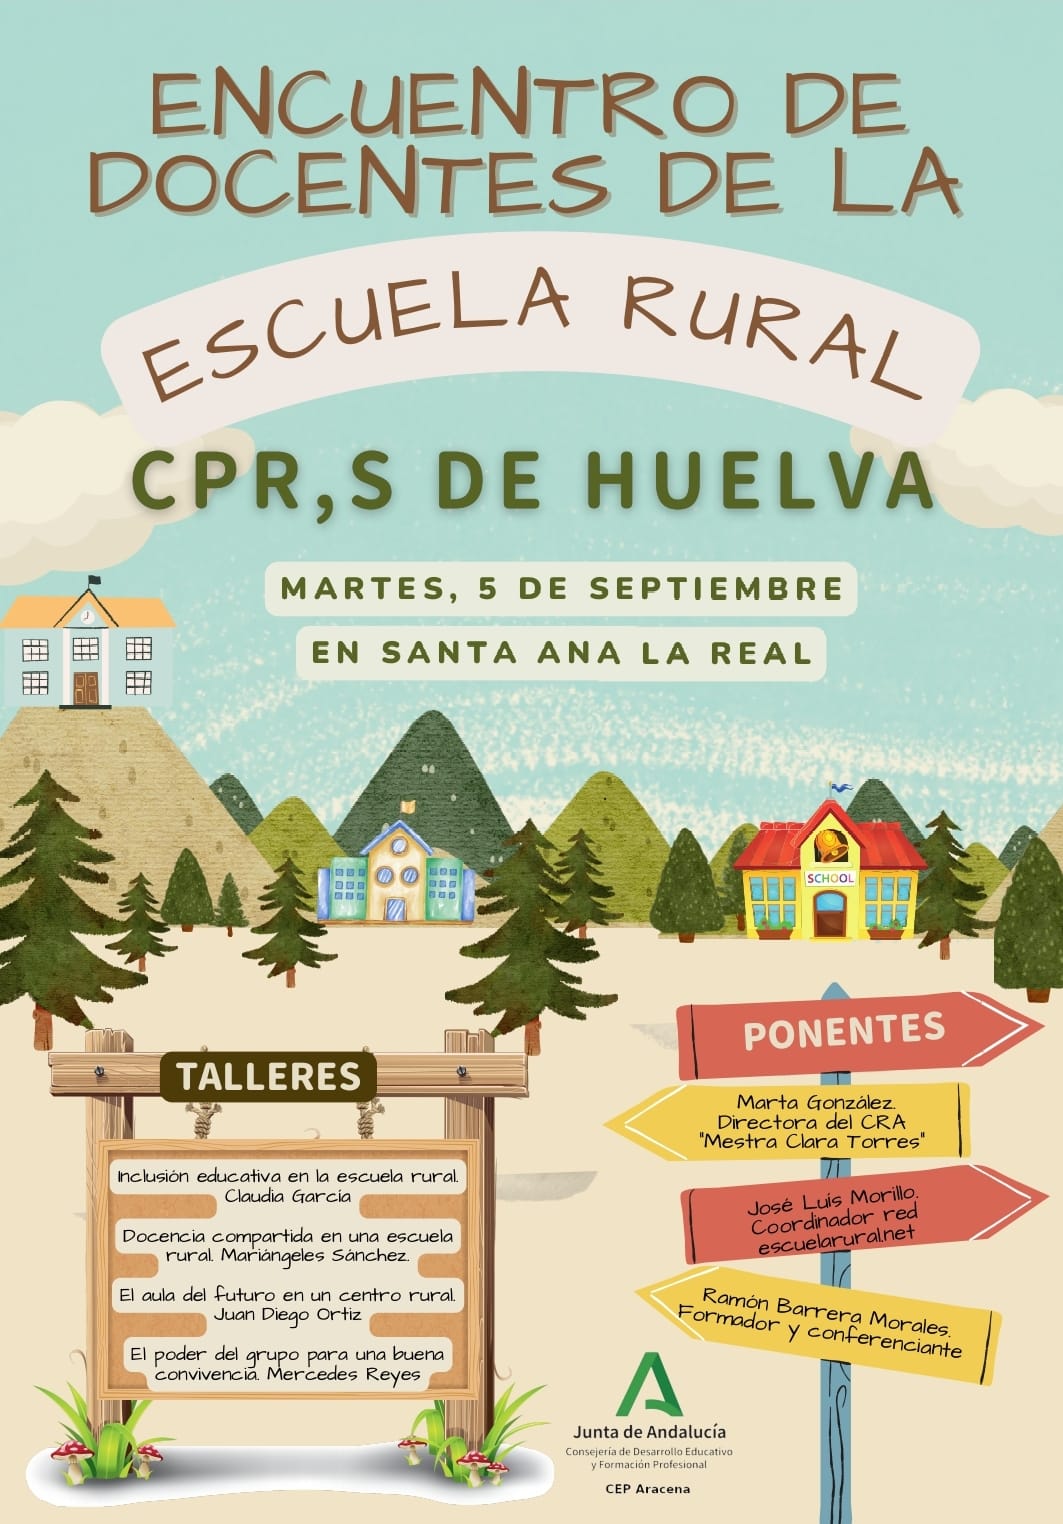 Encuentro de docentes de la escuela rural. CPRs de Huelva